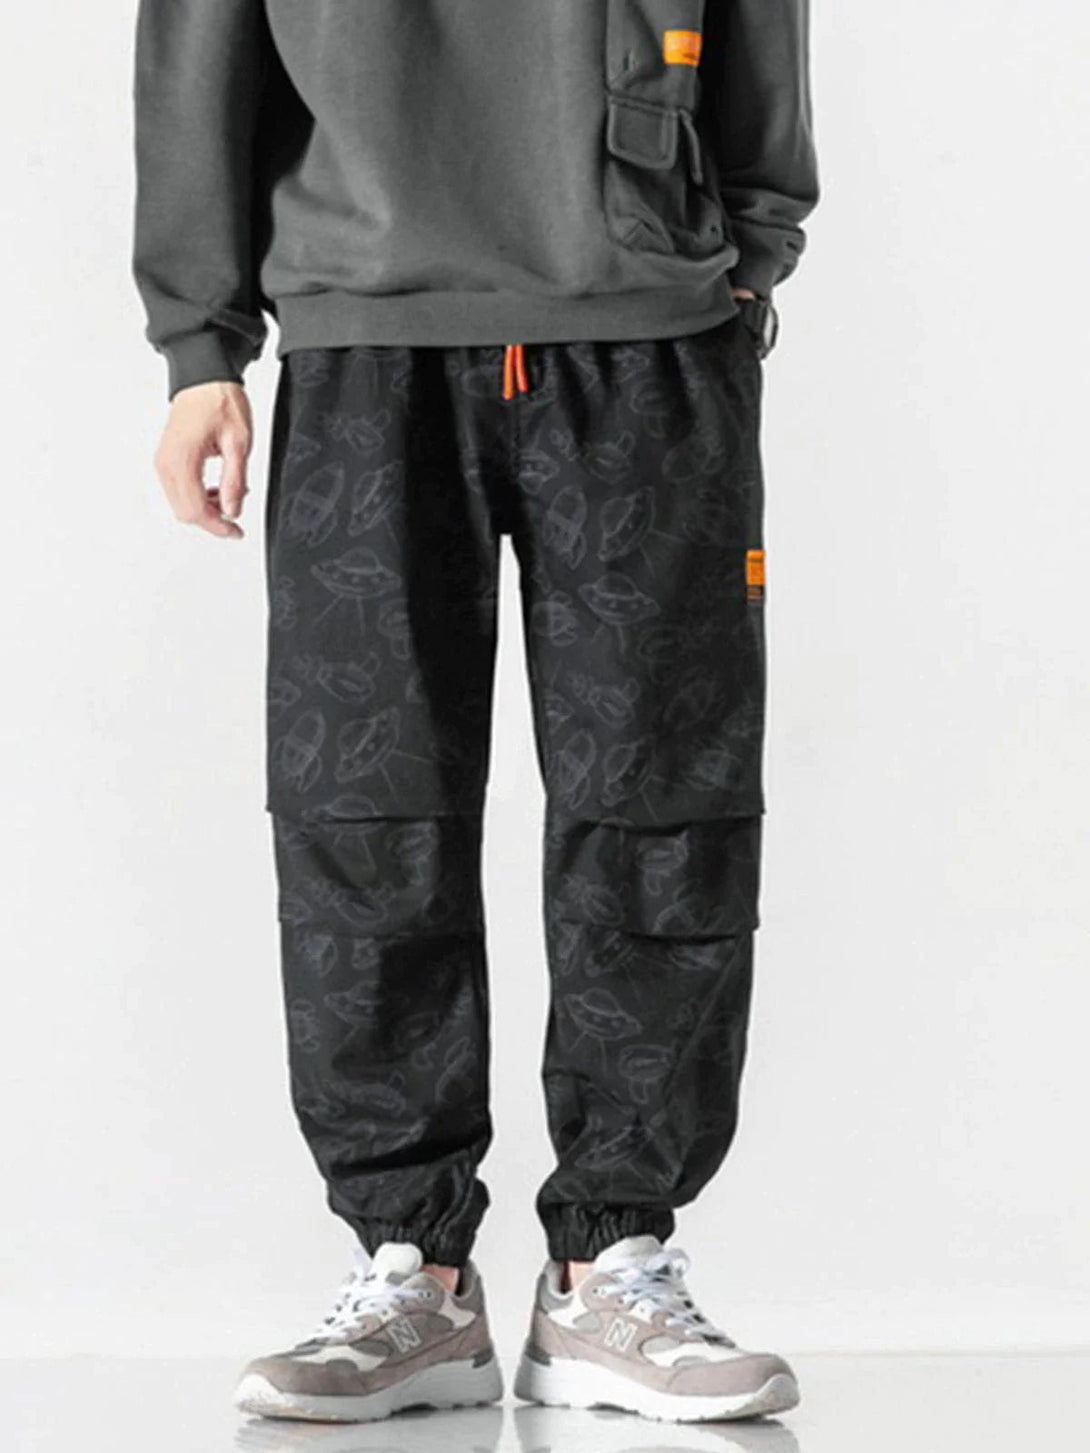 Majesda® - UFO Pattern Pants outfit ideas streetwear fashion